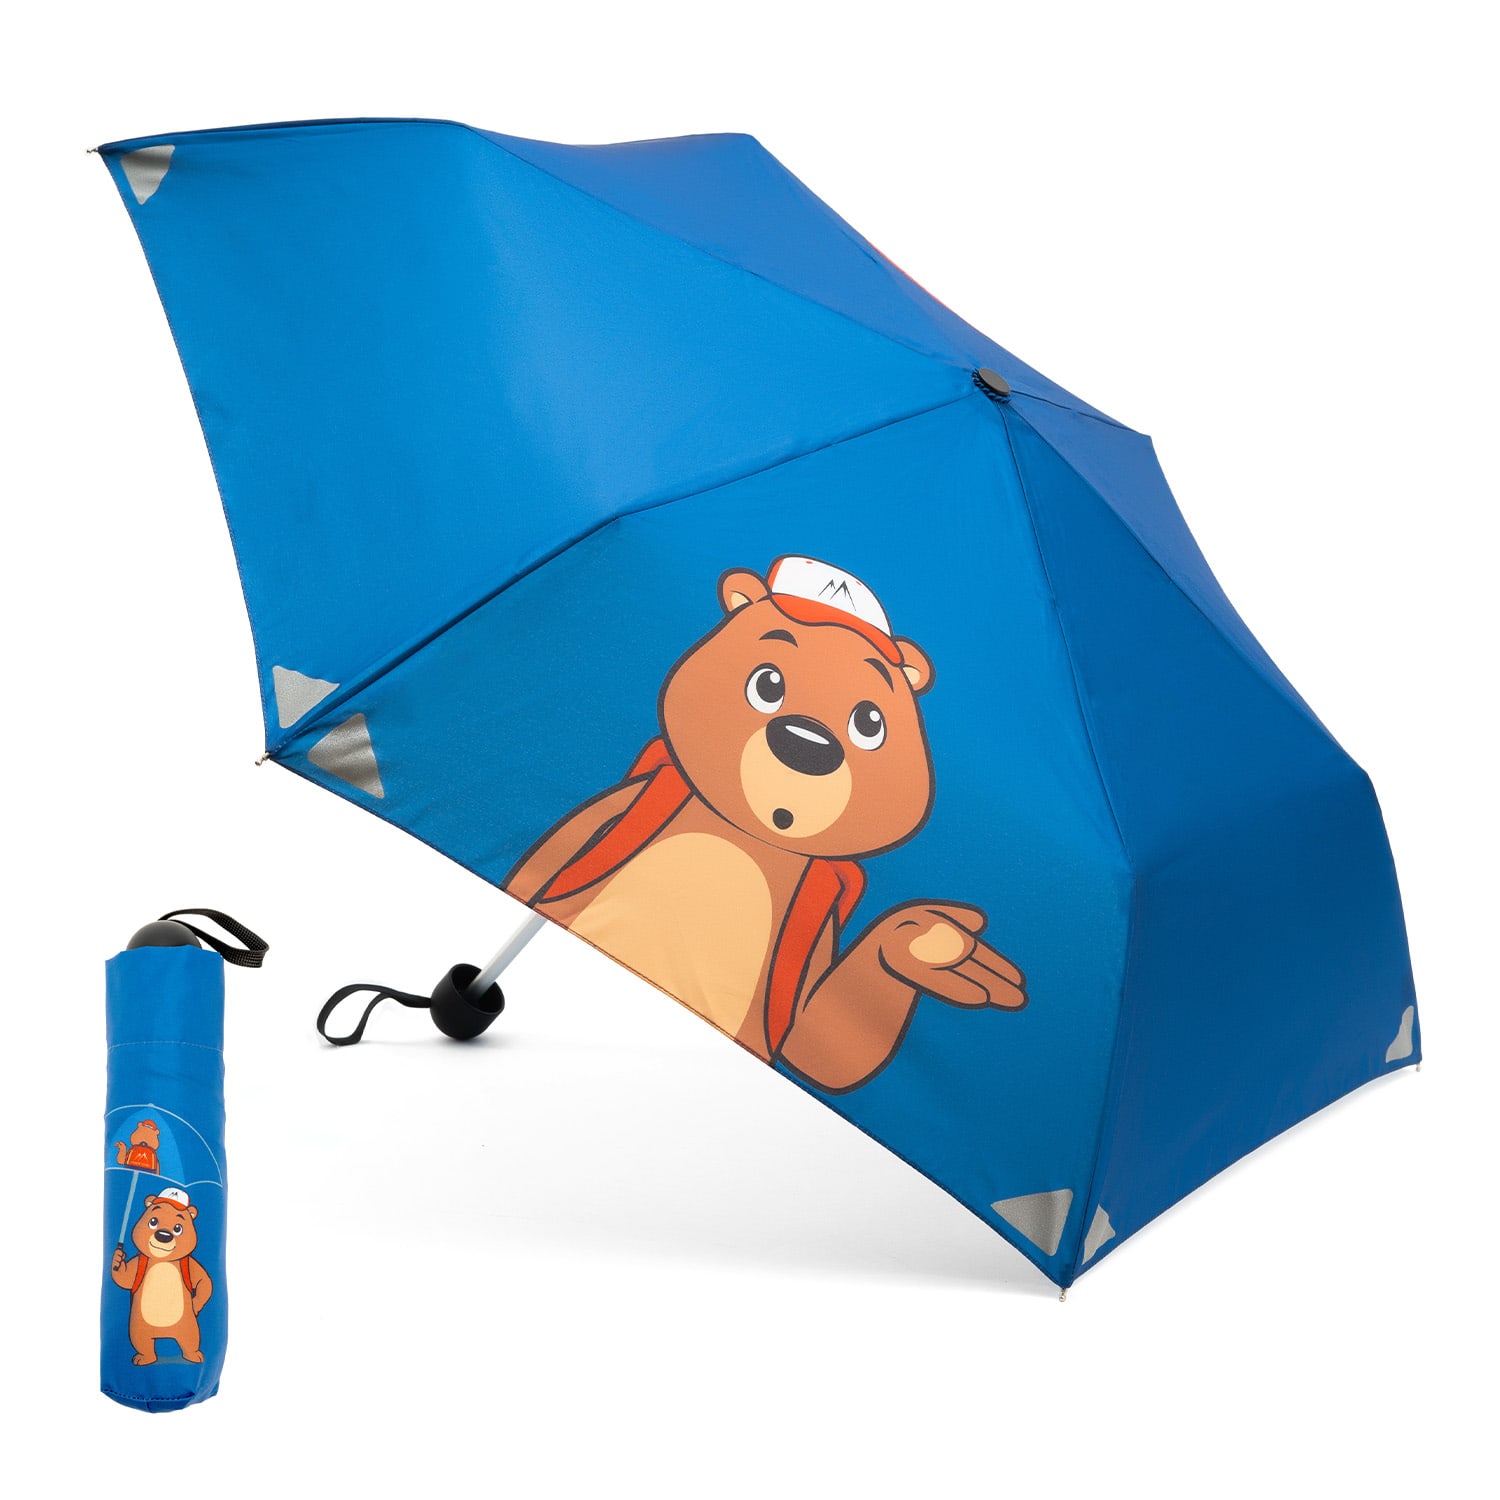 Monte Stivo Votna, dětský deštník, 90 cm Ø, reflexní, skládací